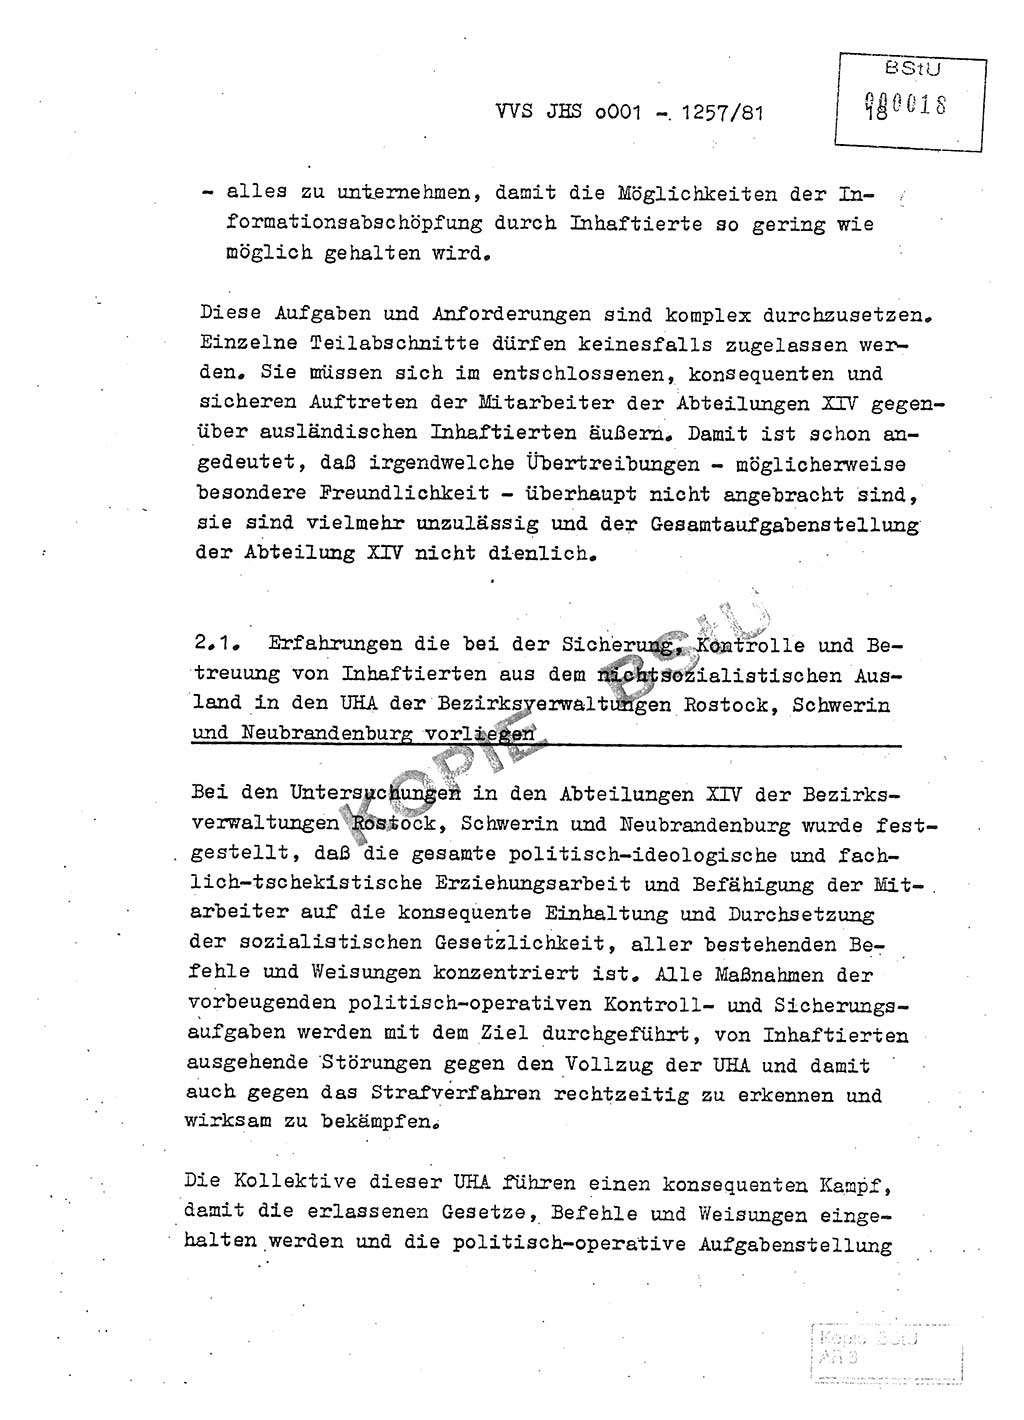 Fachschulabschlußarbeit Unterleutnant Dieter Möller (BV Rst. Abt. ⅩⅣ), Ministerium für Staatssicherheit (MfS) [Deutsche Demokratische Republik (DDR)], Juristische Hochschule (JHS), Vertrauliche Verschlußsache (VVS) o001-1257/81, Potsdam 1982, Seite 18 (FS-Abschl.-Arb. MfS DDR JHS VVS o001-1257/81 1982, S. 18)